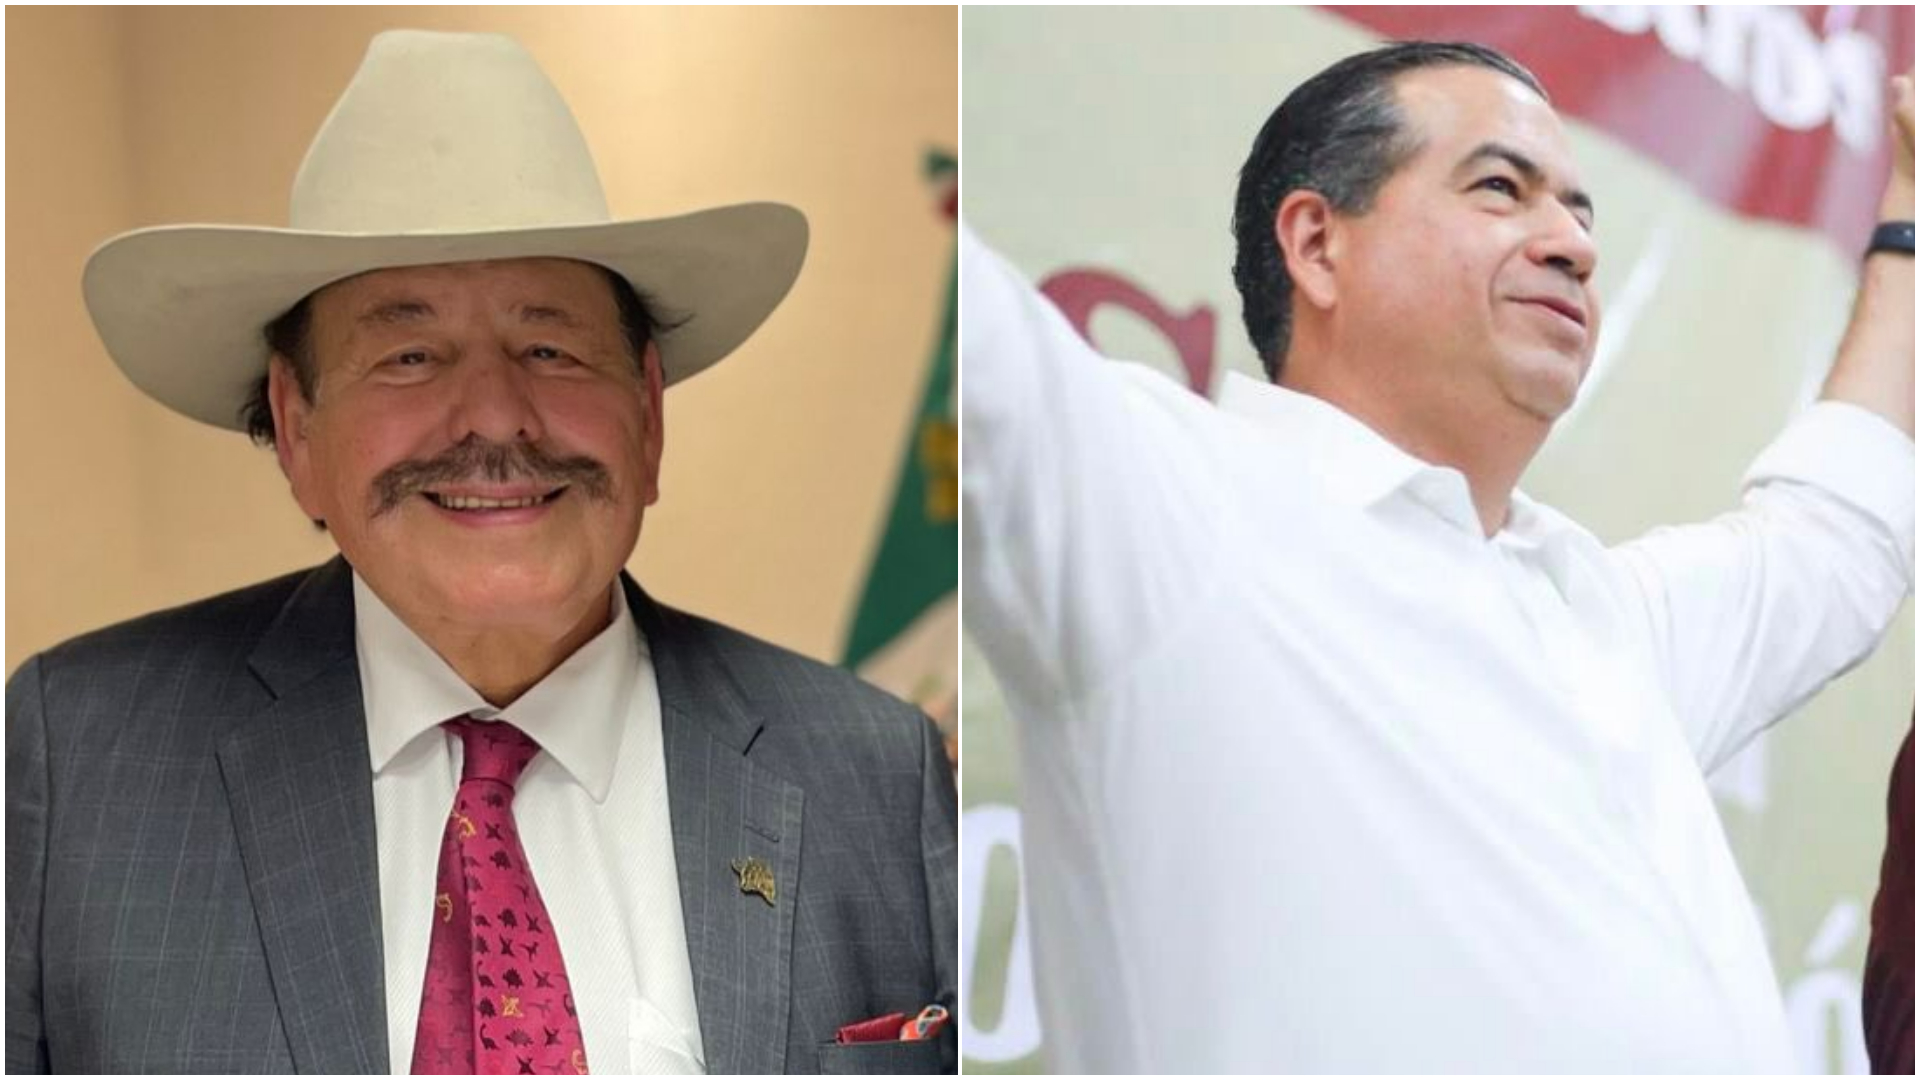 La designación del candidato oficial de Coahuila en Morena sigue causando disputas (Twitter/@aguadiana/@RicardoMeb)